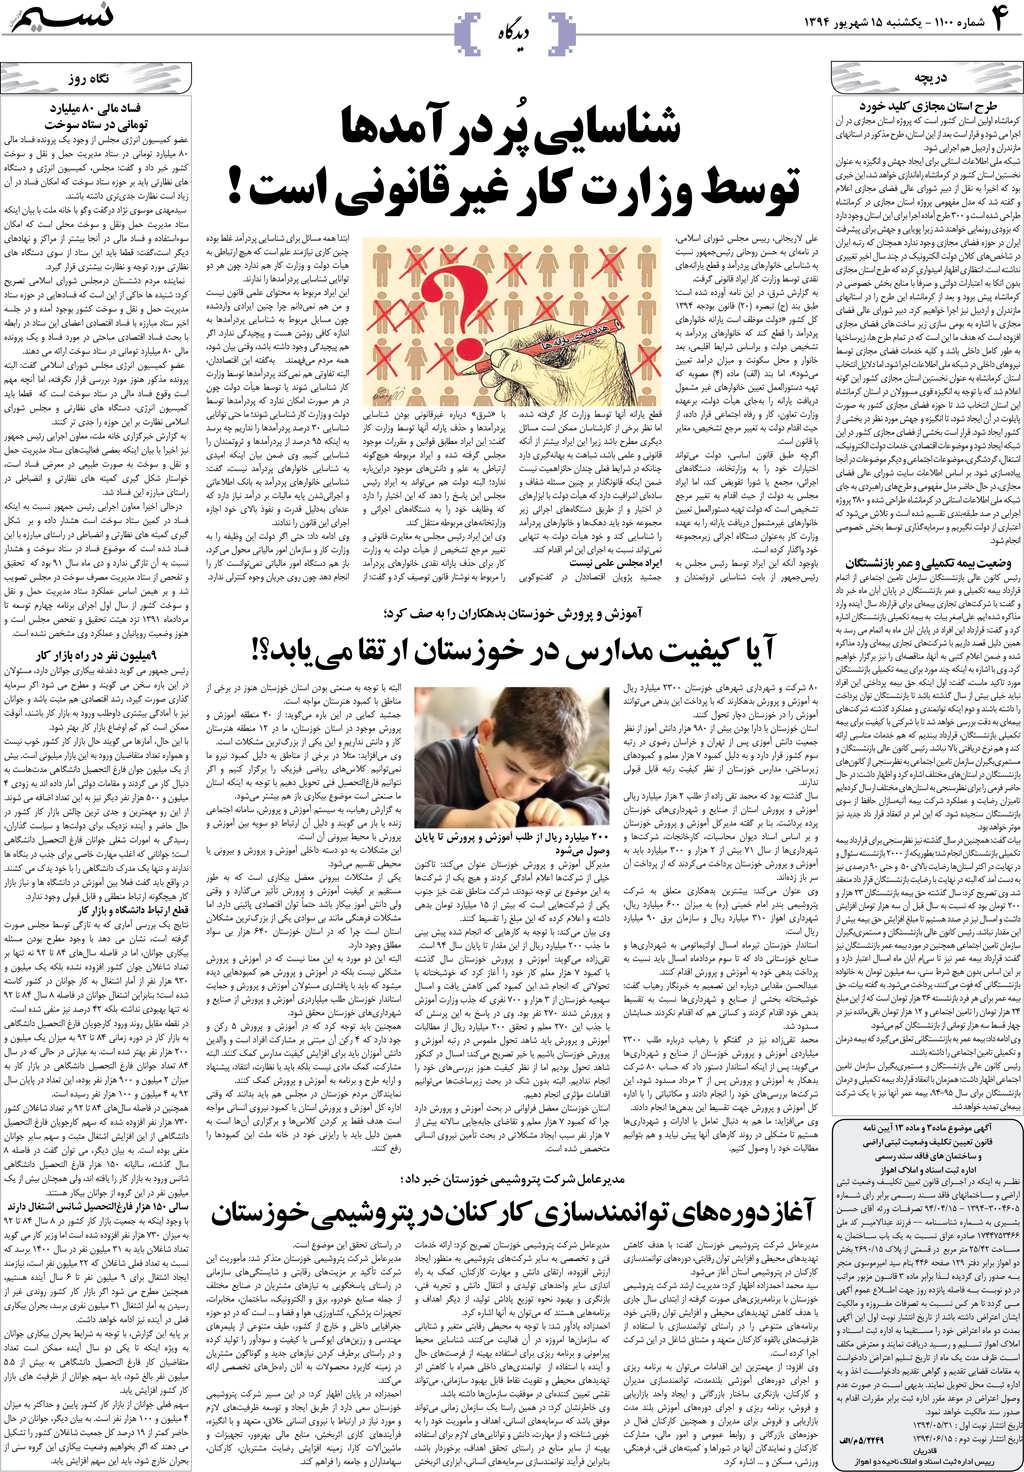 صفحه دیدگاه روزنامه نسیم شماره 1100